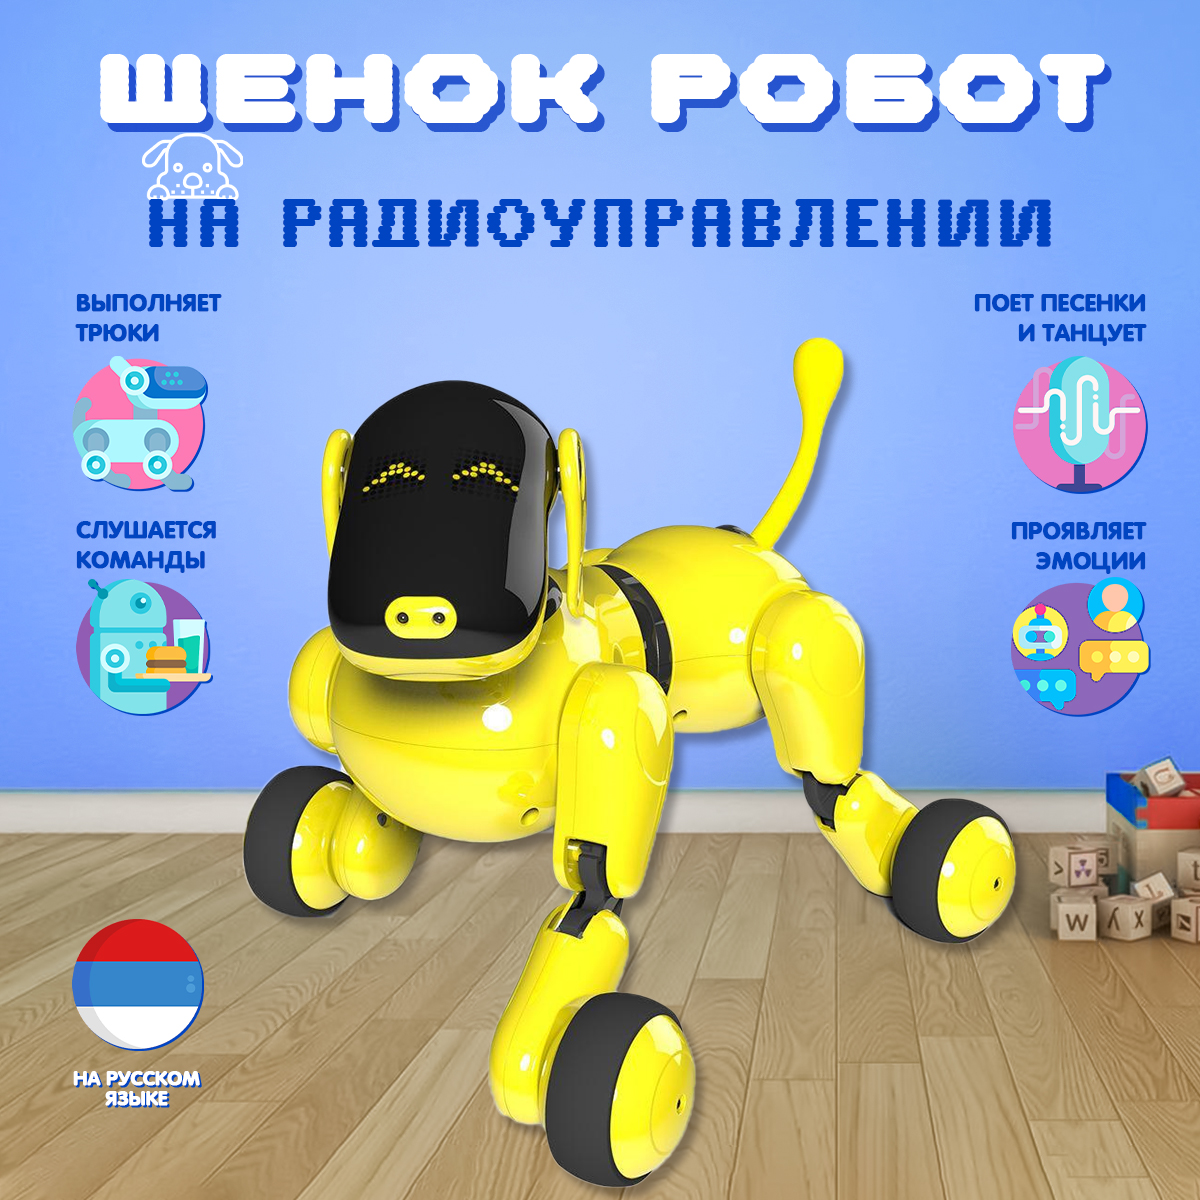 Собака робот DGMedia русифицированный, желтый